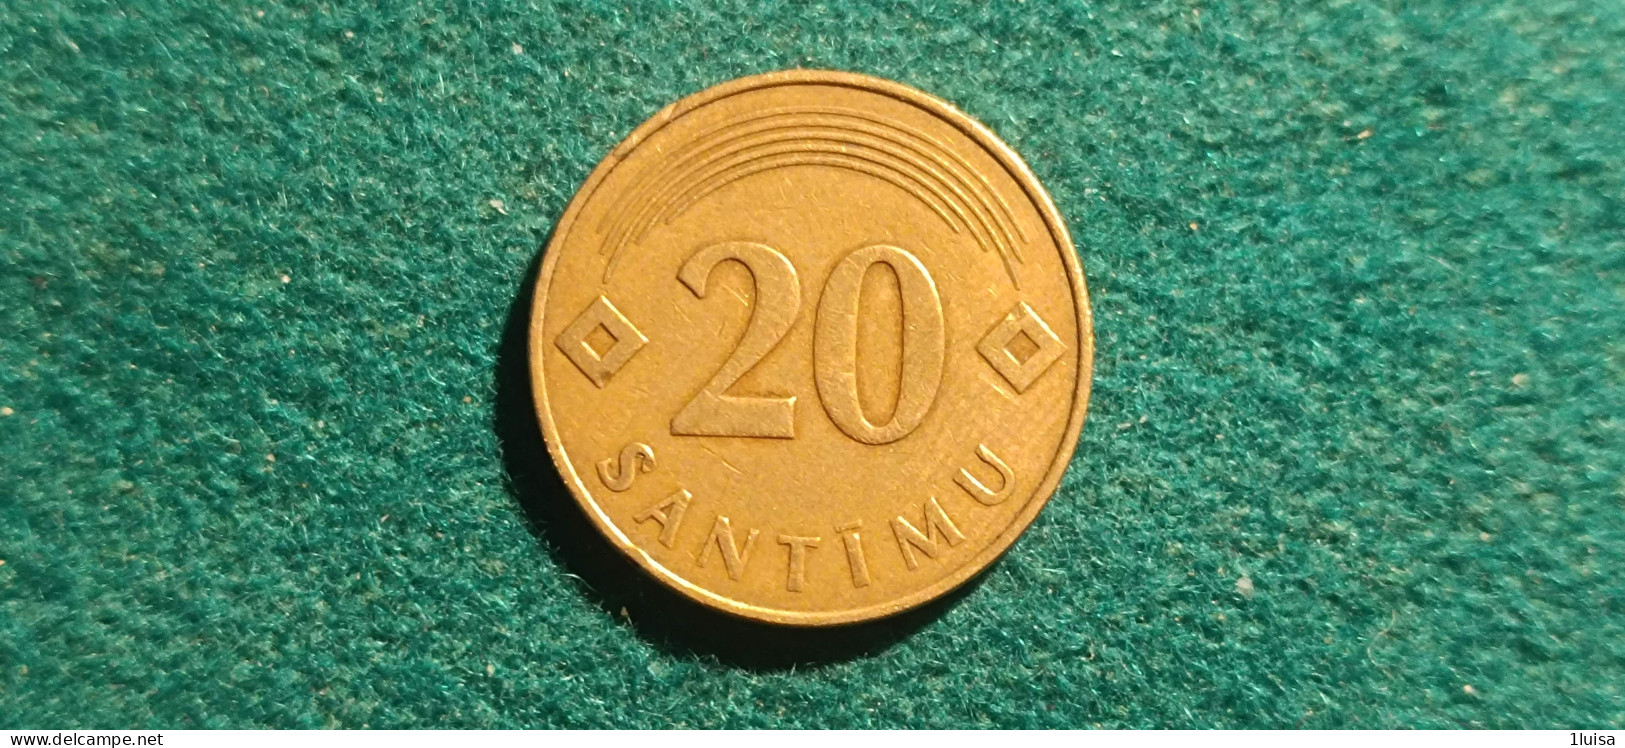 LITUANIA 20 SANTIMU 1992 - Lituanie